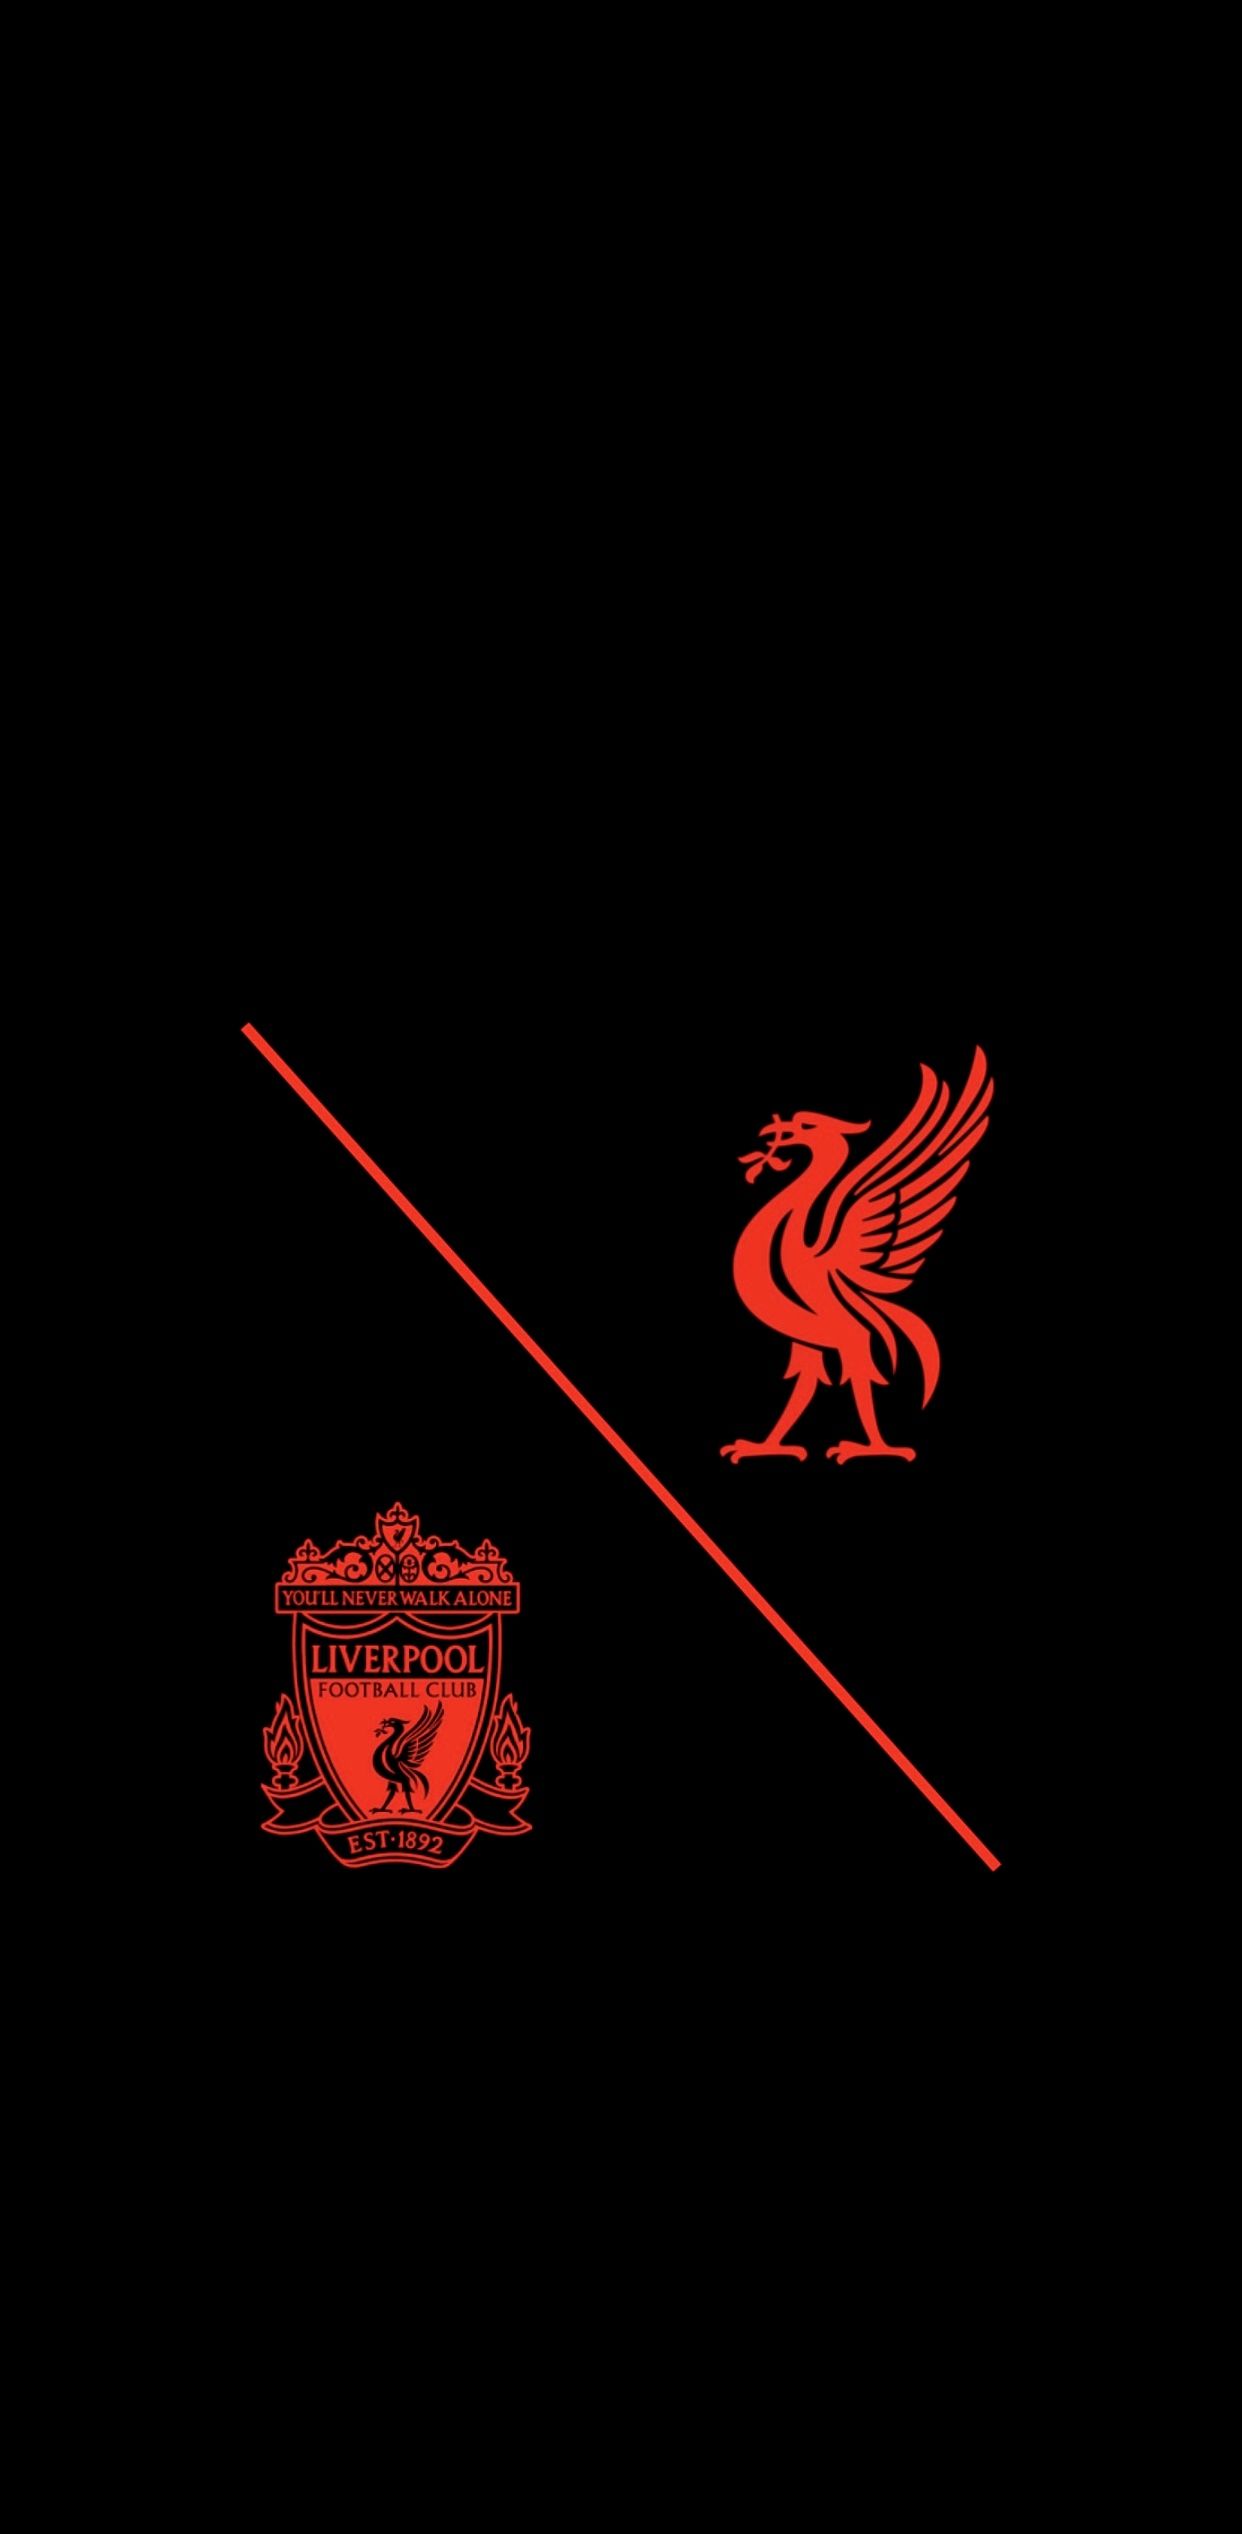 Liverpool Wallpaper di 2021. Olahraga, Wallpaper ponsel, Buku